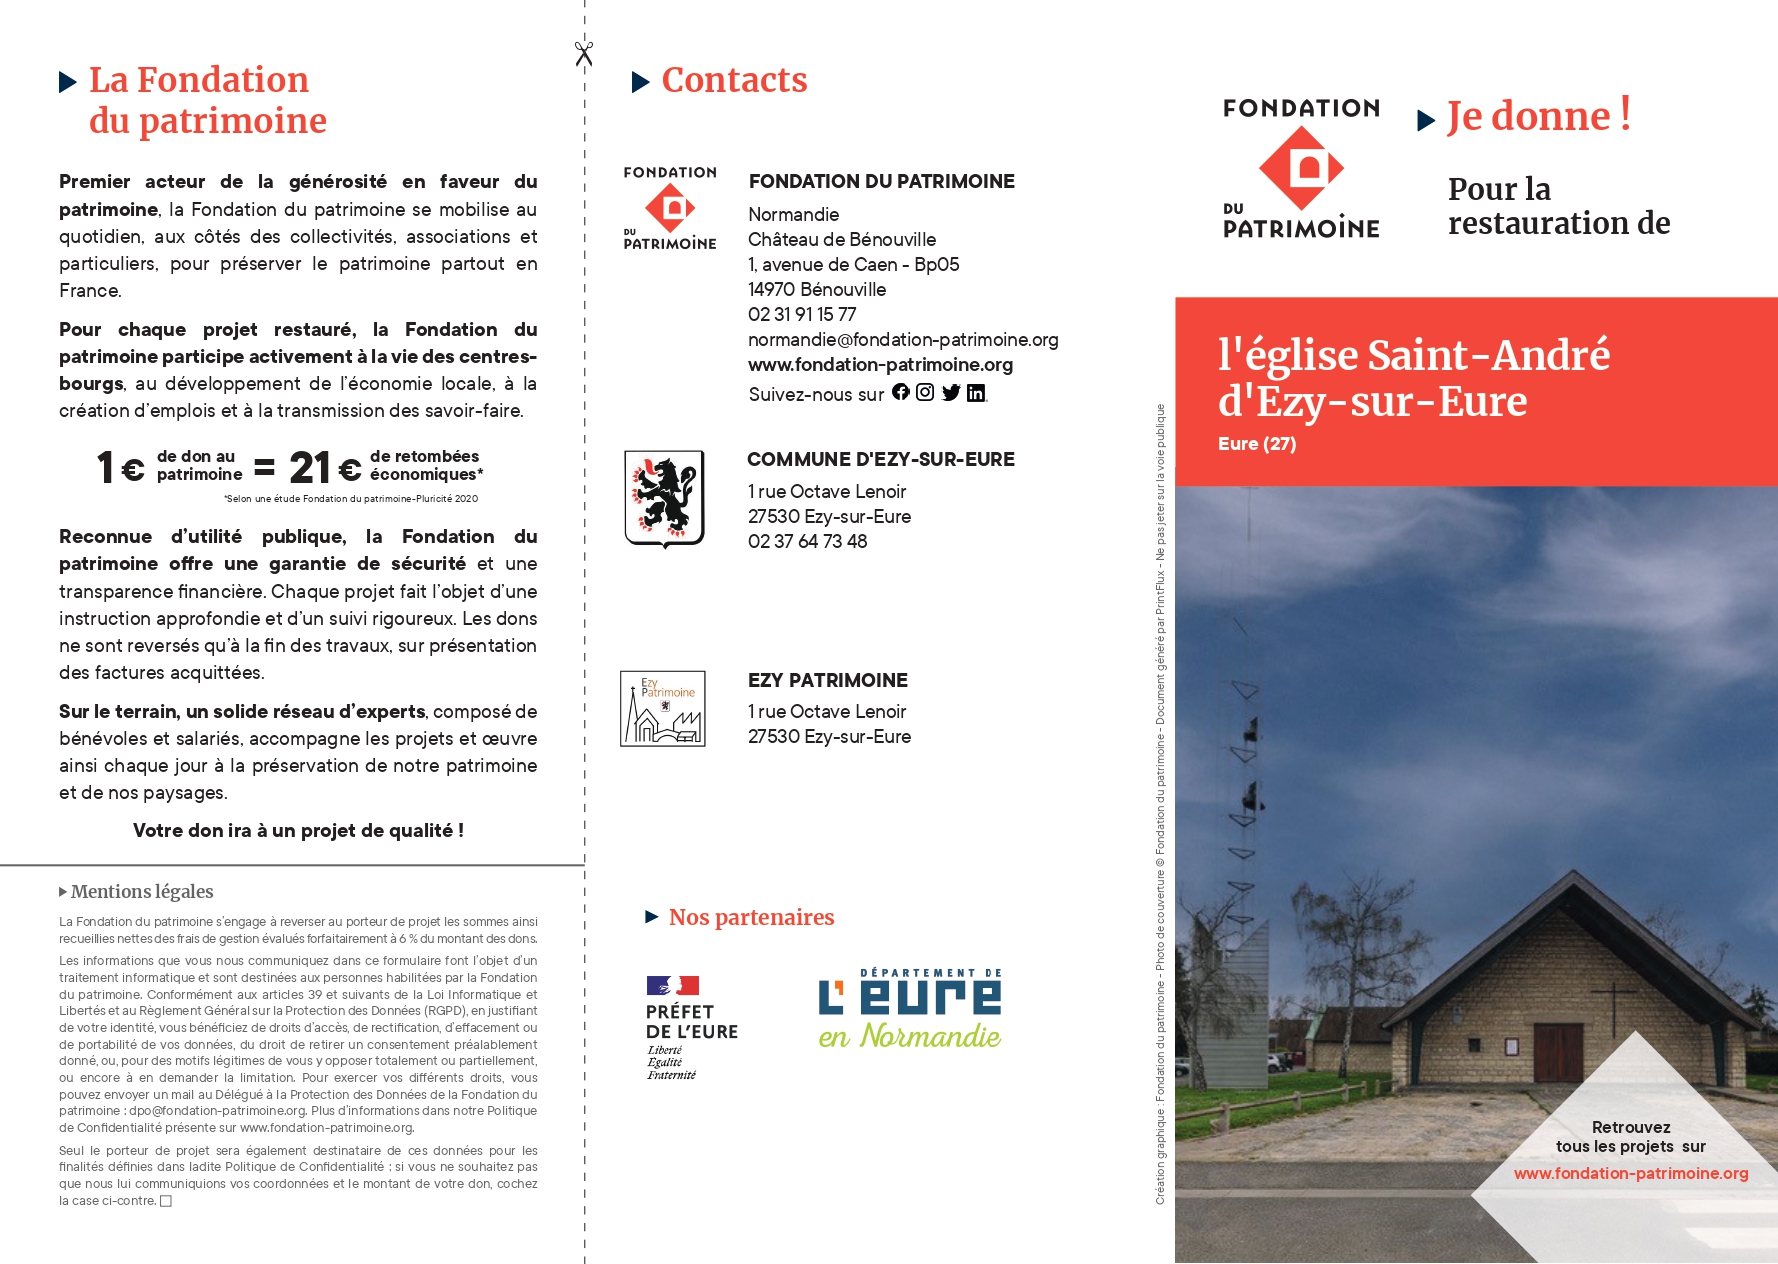 Bulletin de don - Ezy-sur-Eure - modifié_page-0001.jpg